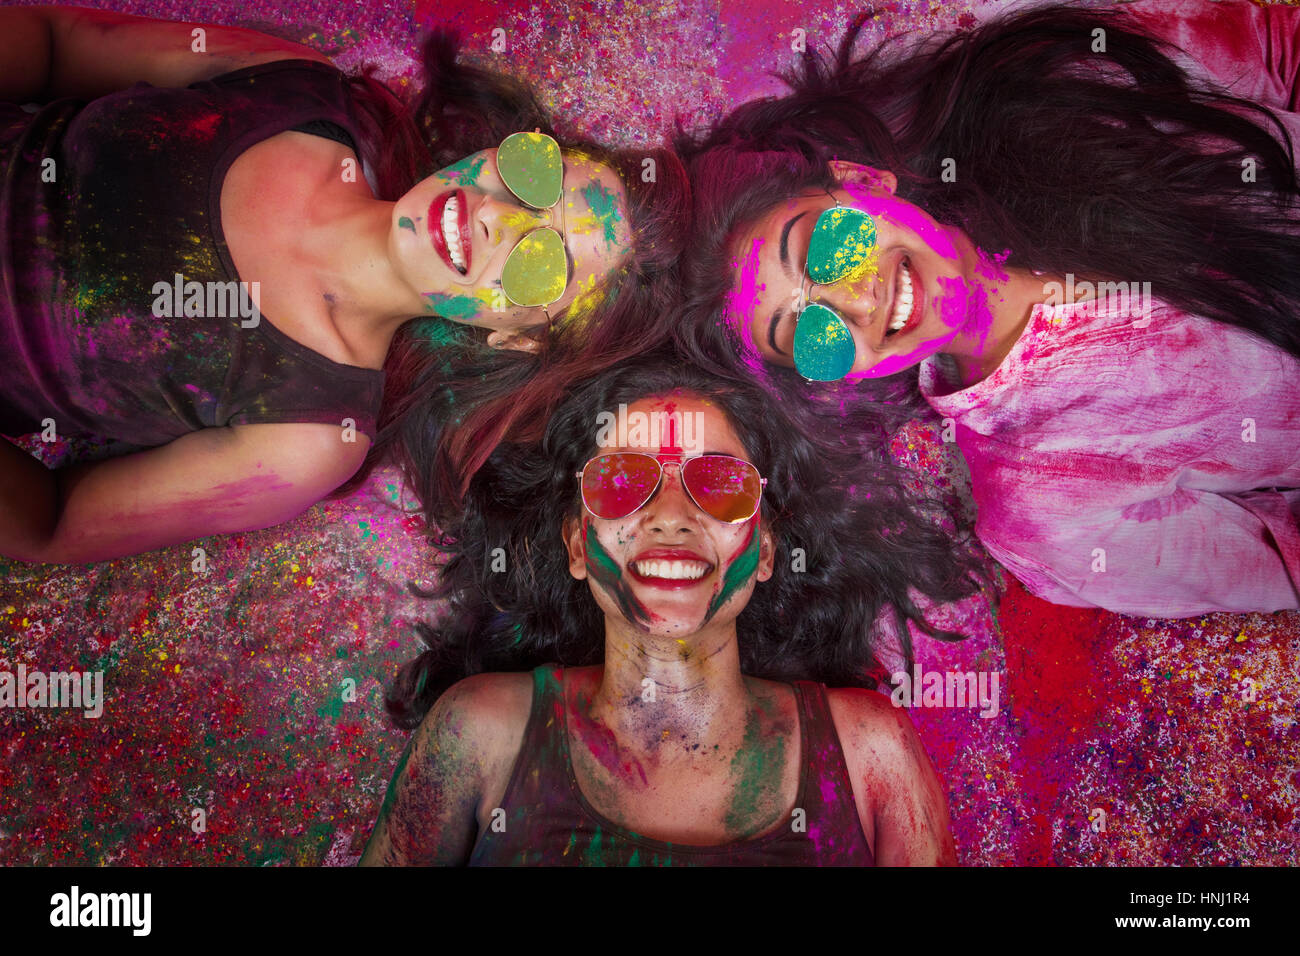 Elevato angolo di visione indiana di ragazze adolescenti giacenti e coperto di polvere colorata durante Holi festival a colori Foto Stock